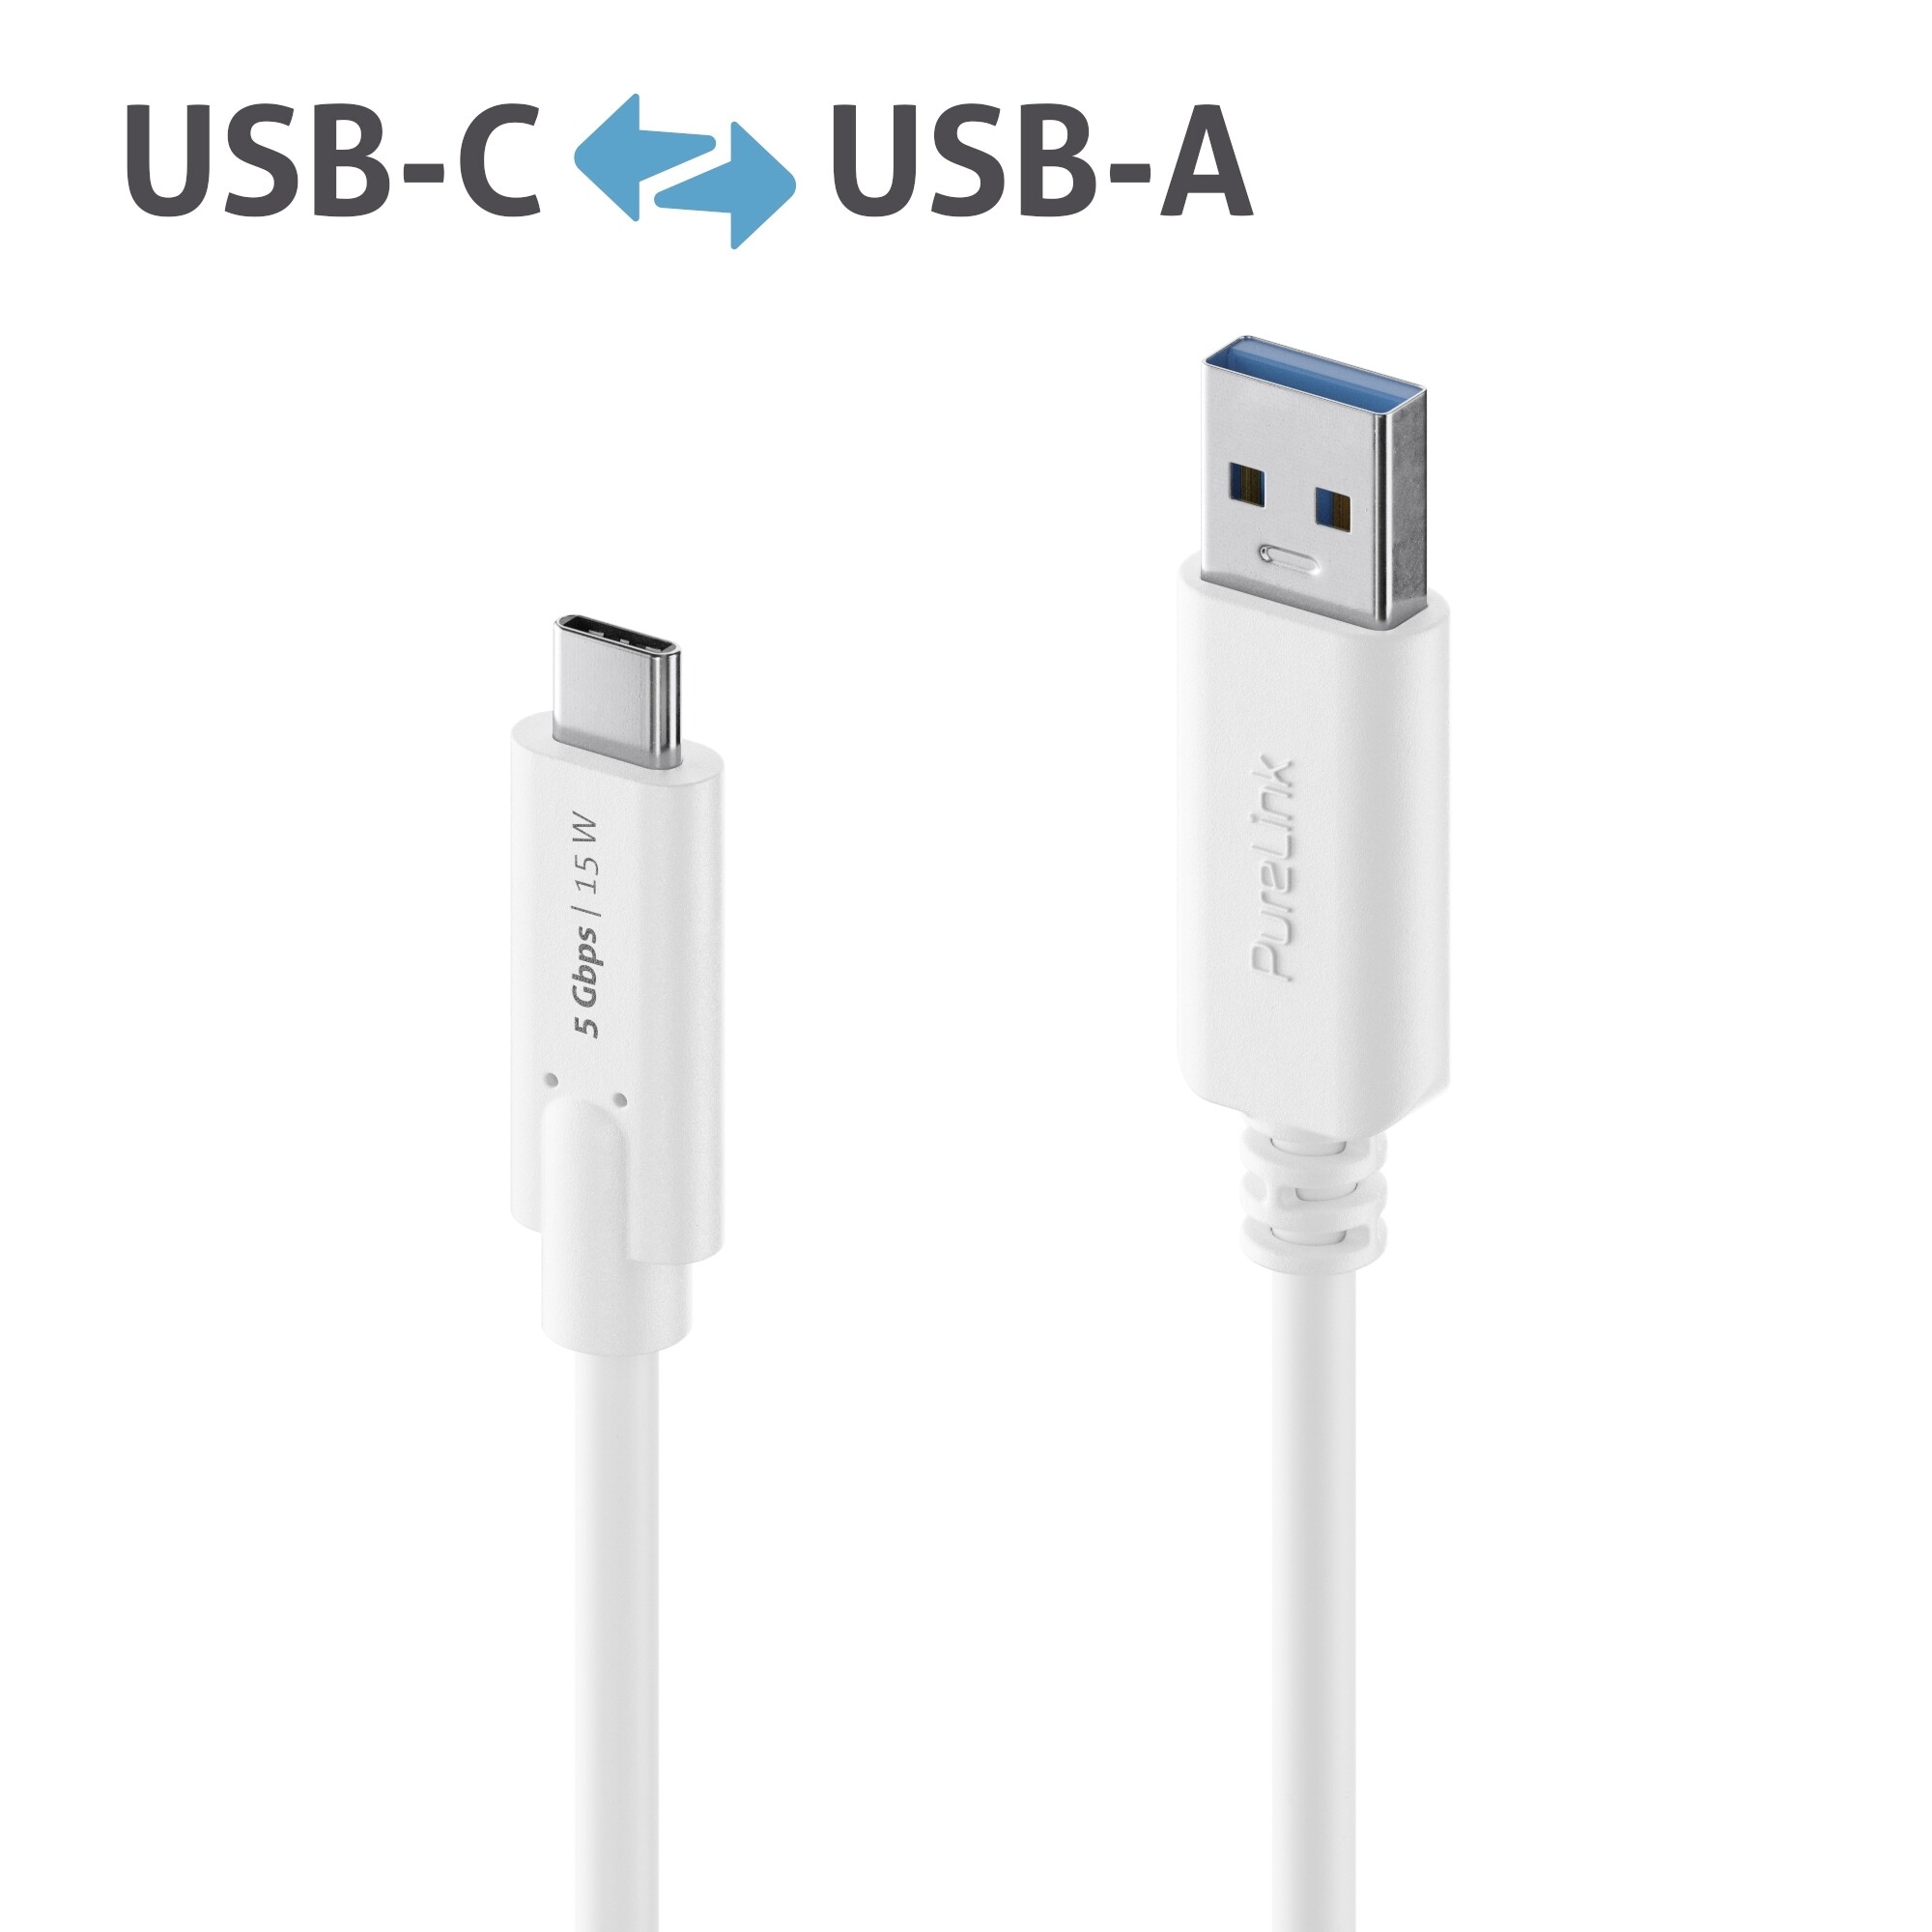 Purelink-IS2600-005-USB-C-auf-USB-A-Kabel-0-5m-weiss